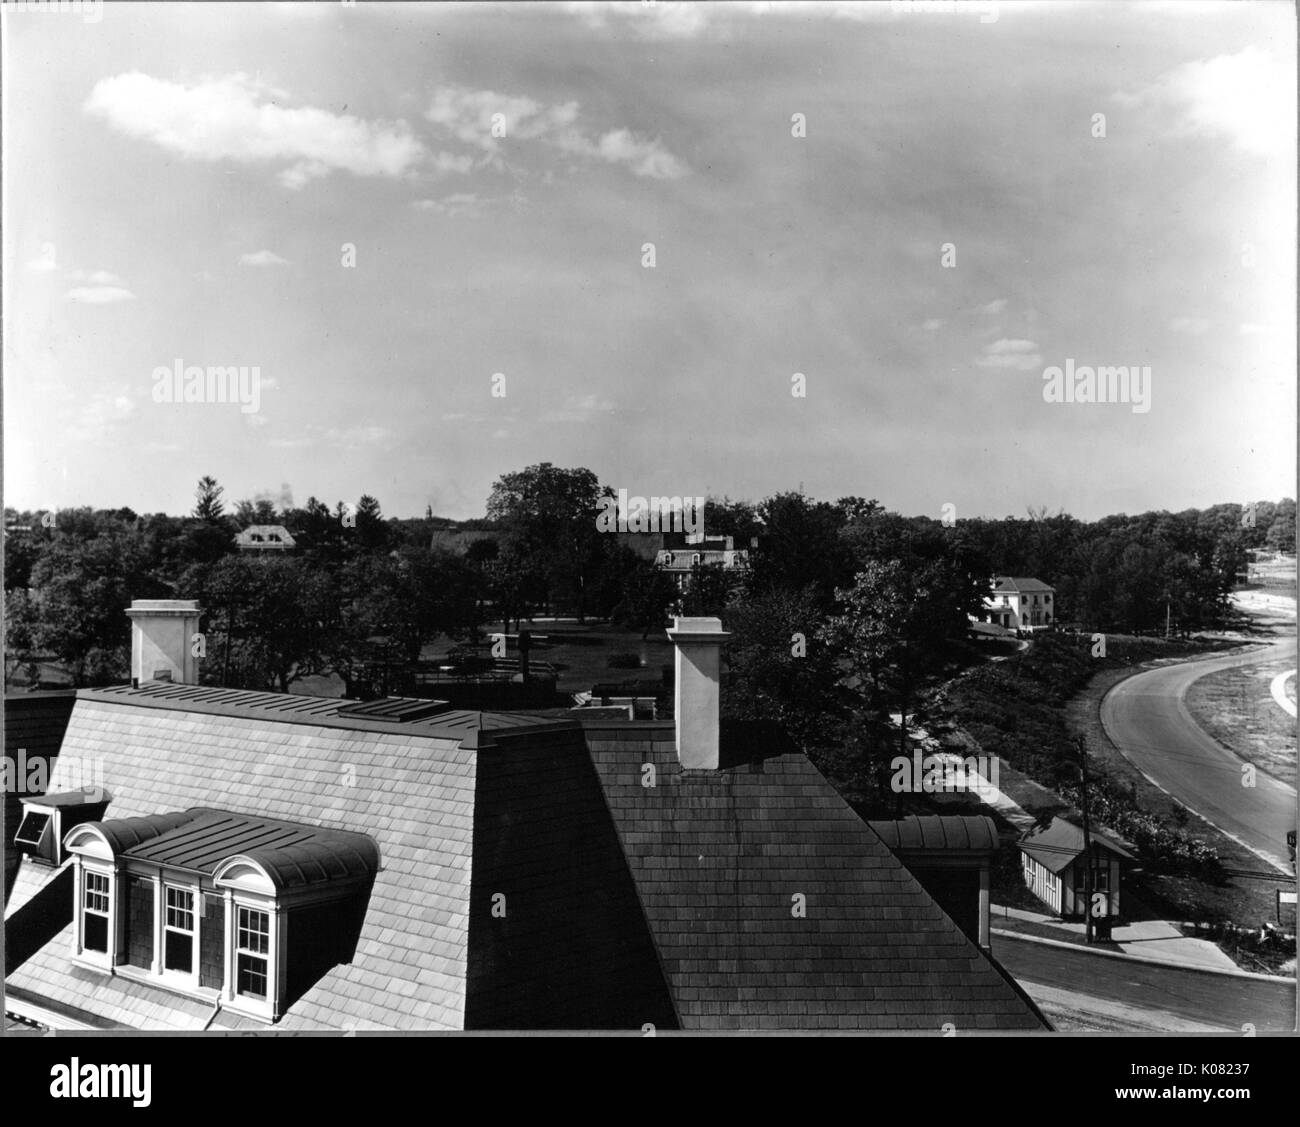 Vue aérienne d'un quartier de Baltimore, Maryland, montrant le toit d'une maison avec des lucarnes et deux cheminées, une route, un grand nombre d'arbres et maisons partiellement obscurci dans l'arrière-plan, 1910. Banque D'Images